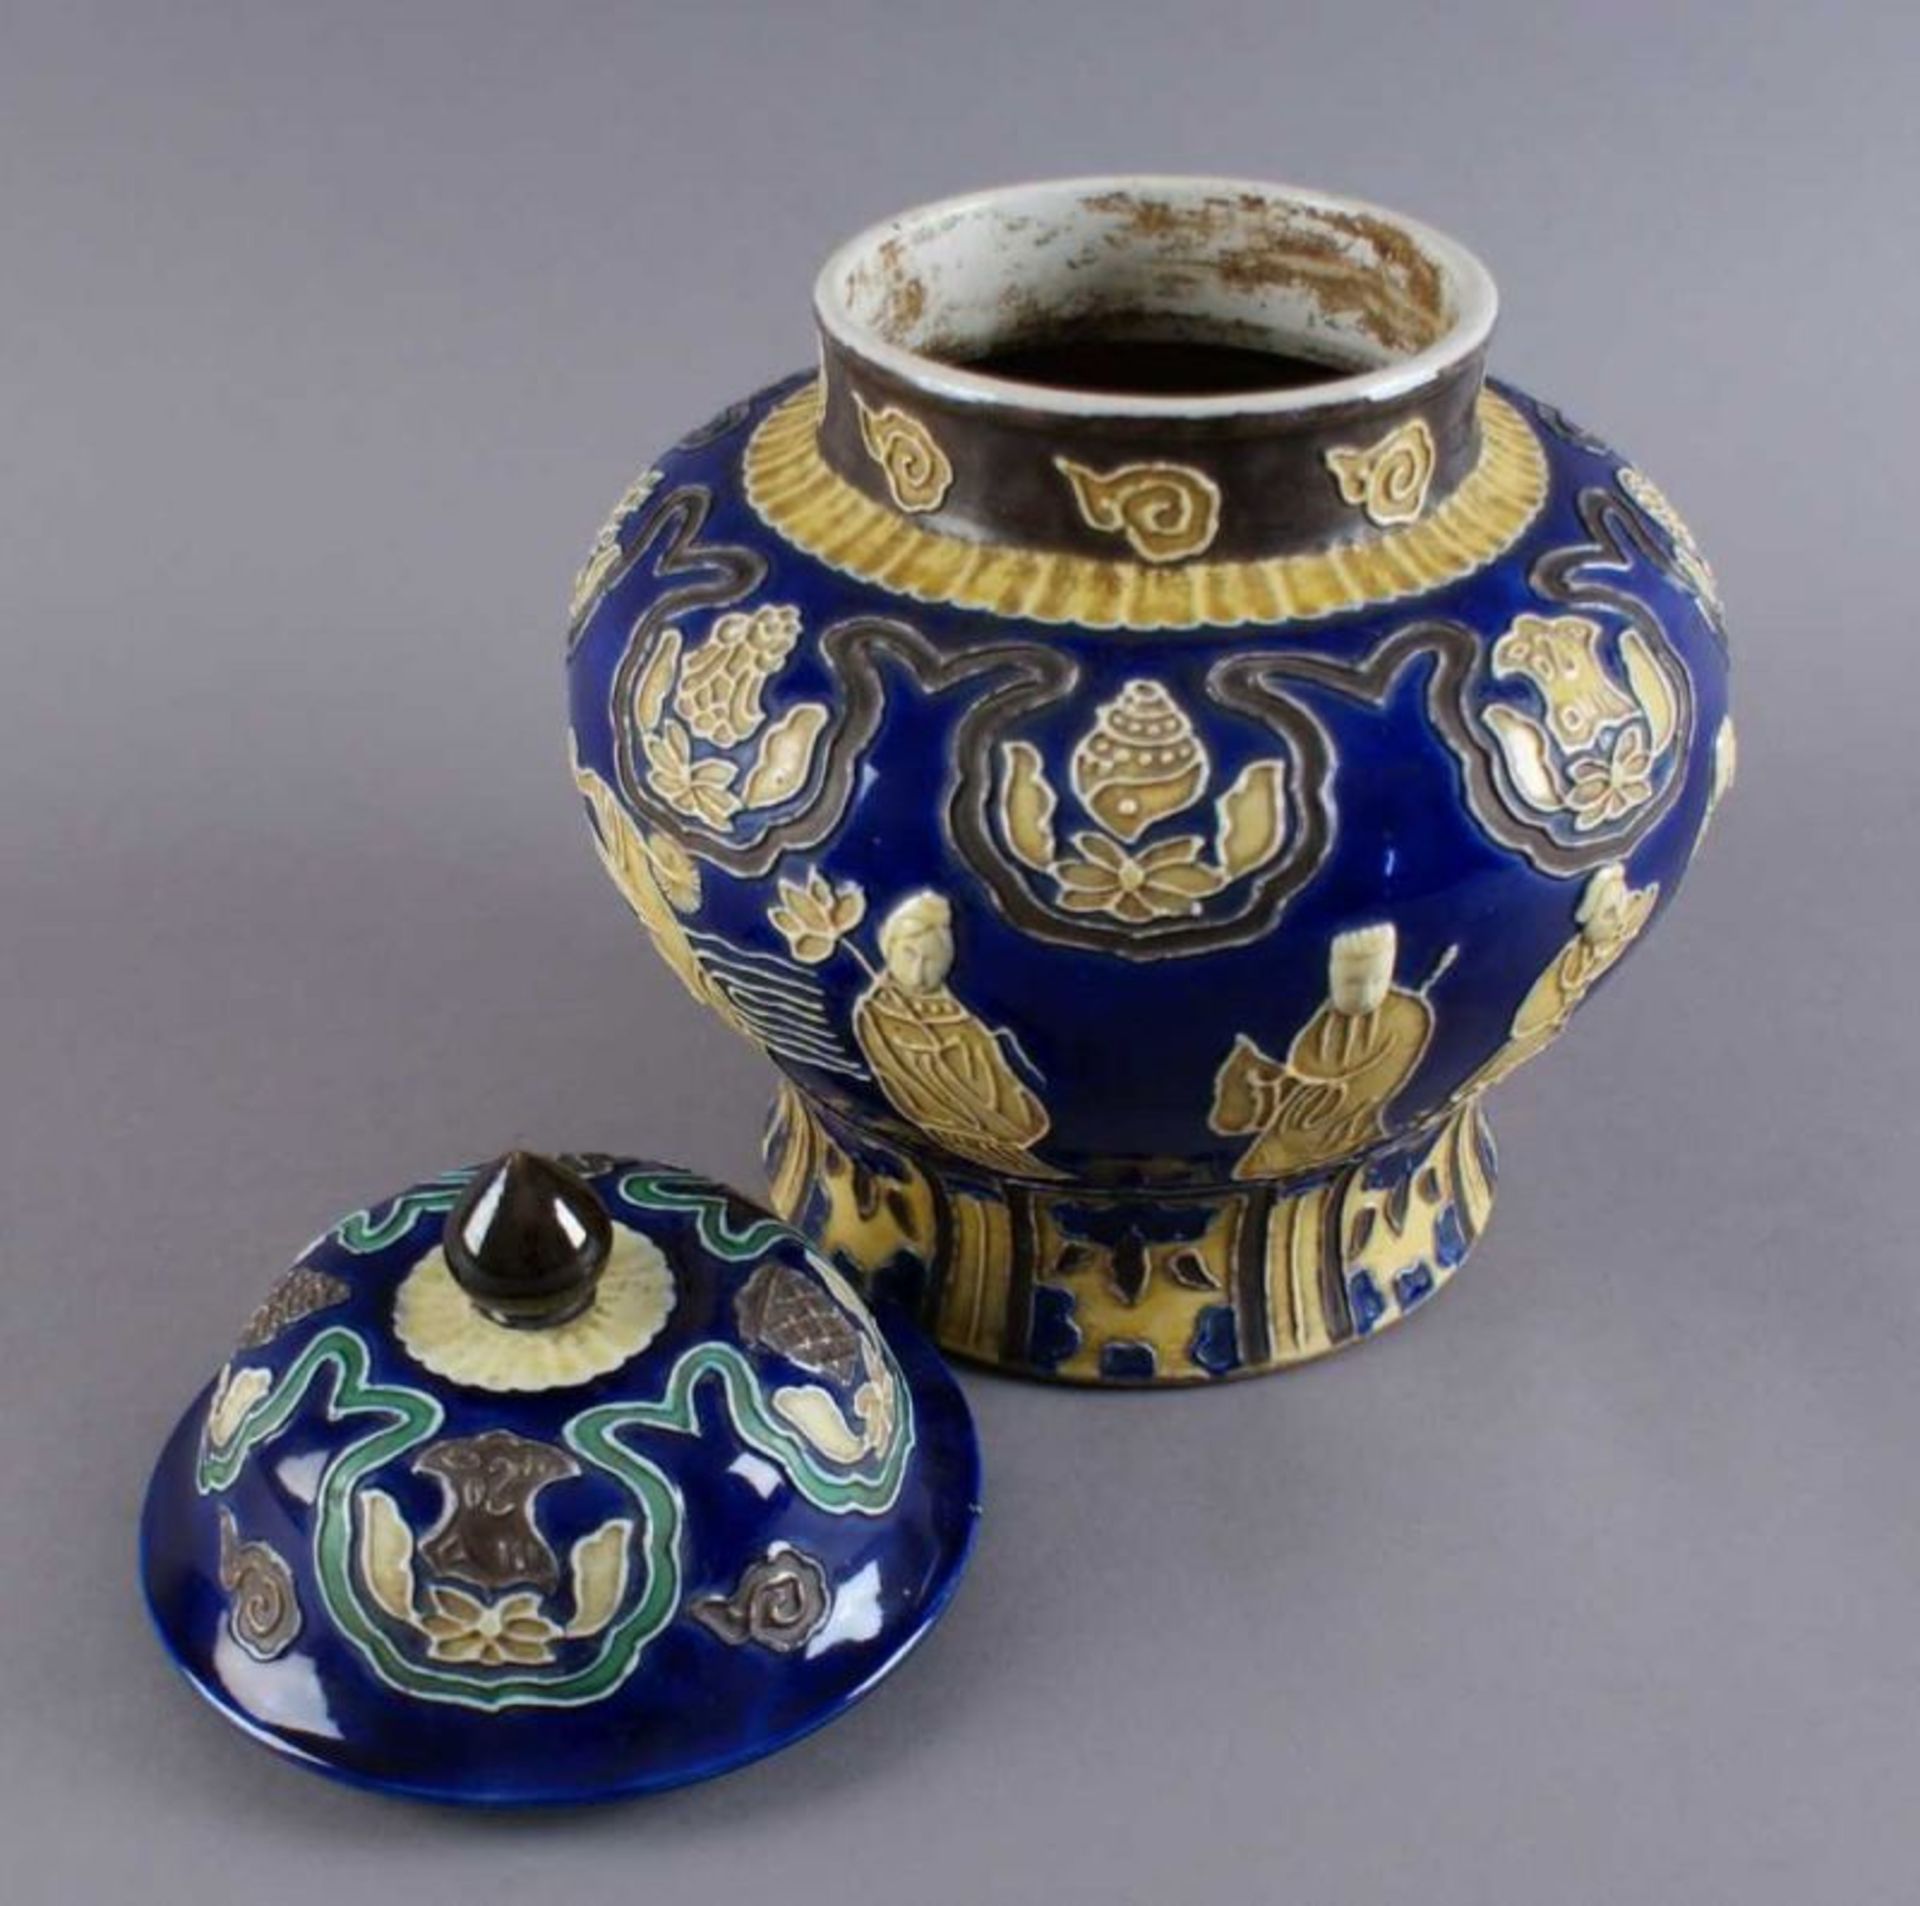 ASIATISCHE DECKELVASE / BONBONIERE blaugrundige, bauchige Keramik-Deckelvase, reliefartige - Bild 4 aus 4